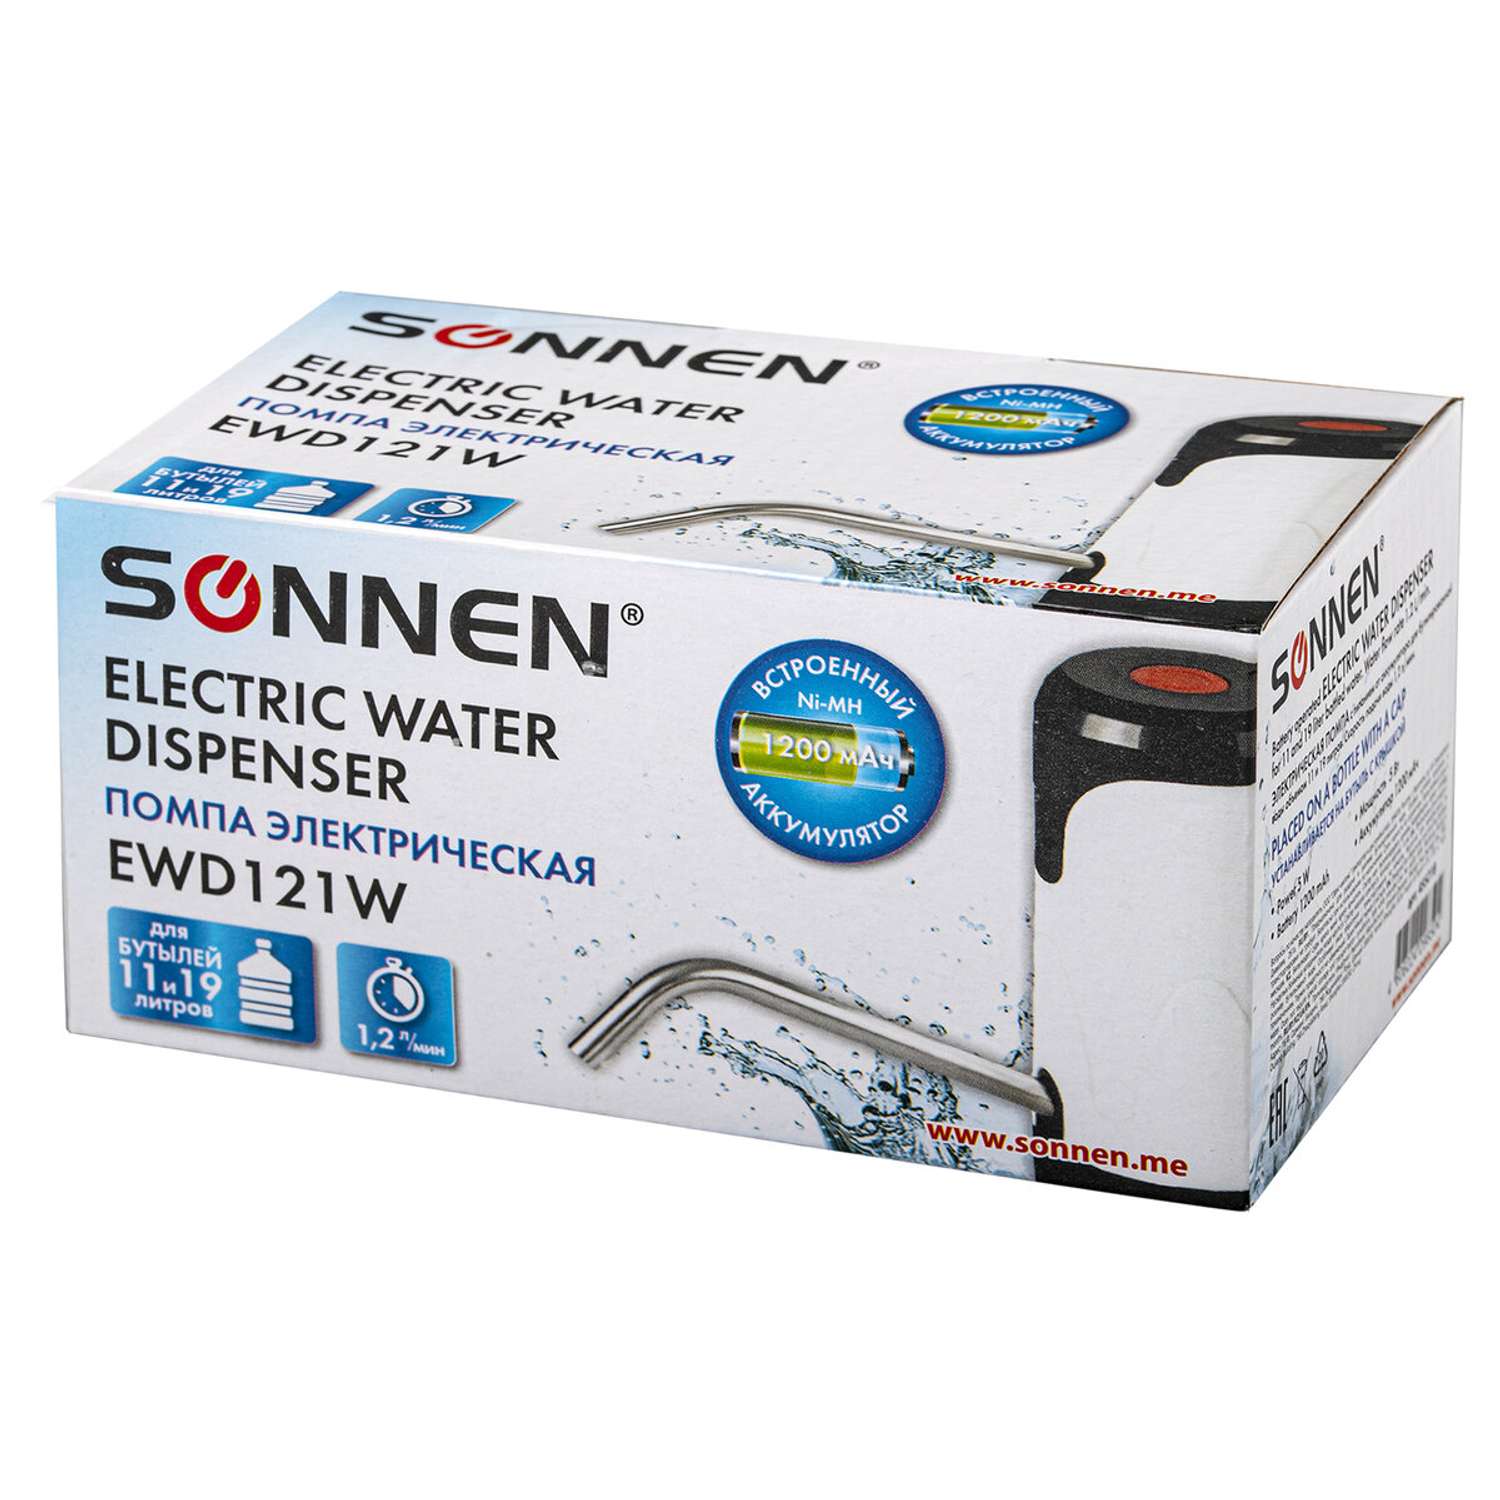 Помпа для воды Sonnen автоматическая электрическая Ewd121w 1.2 л - фото 16